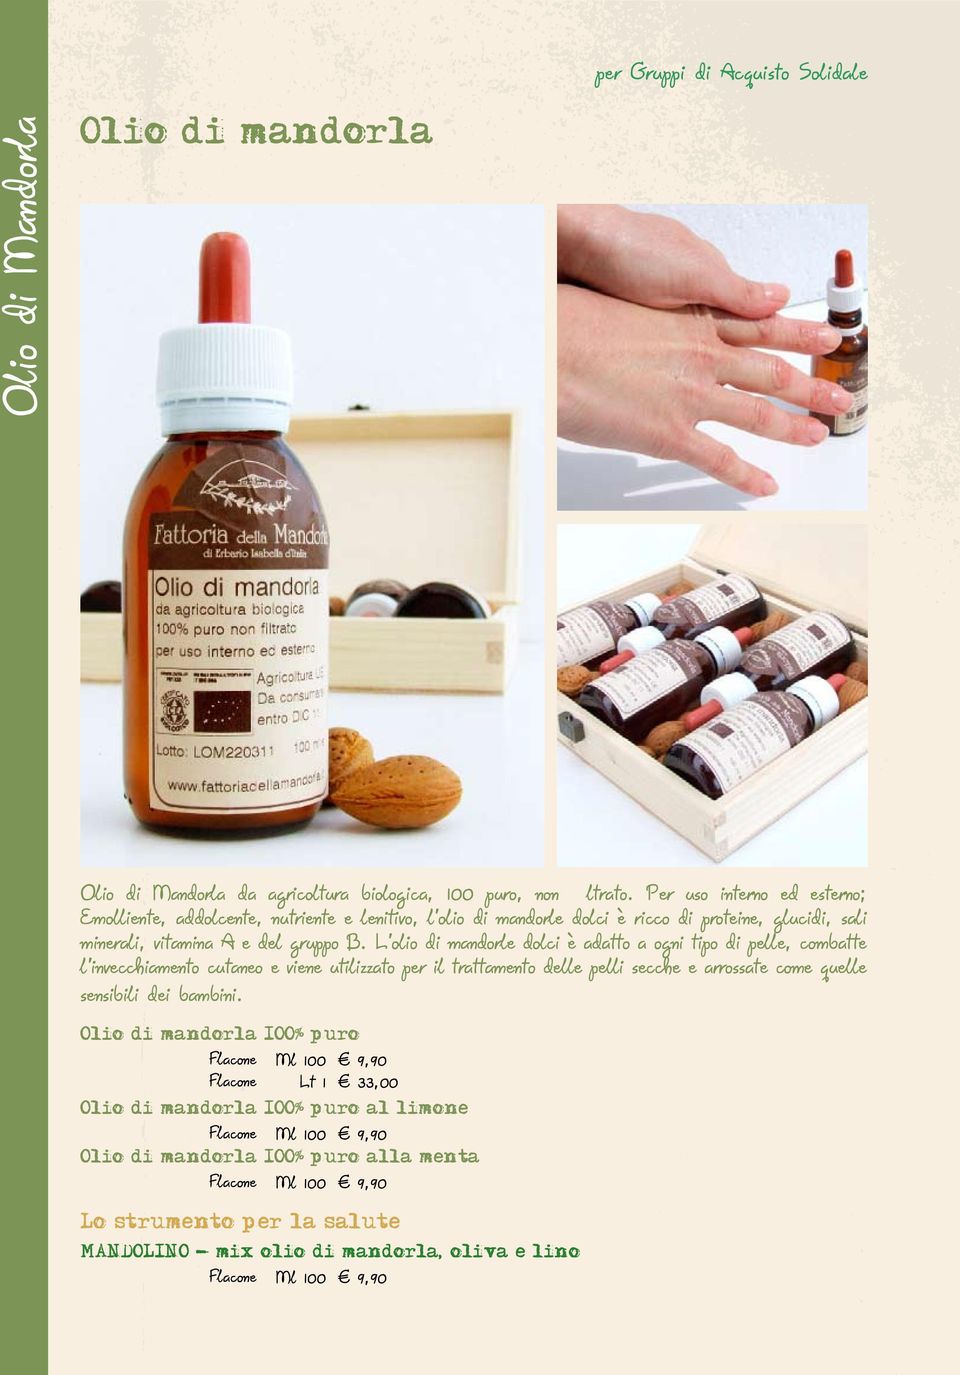 L olio di mandorle dolci è adatto a ogni tipo di pelle, combatte l invecchiamento cutaneo e viene utilizzato per il trattamento delle pelli secche e arrossate come quelle sensibili dei